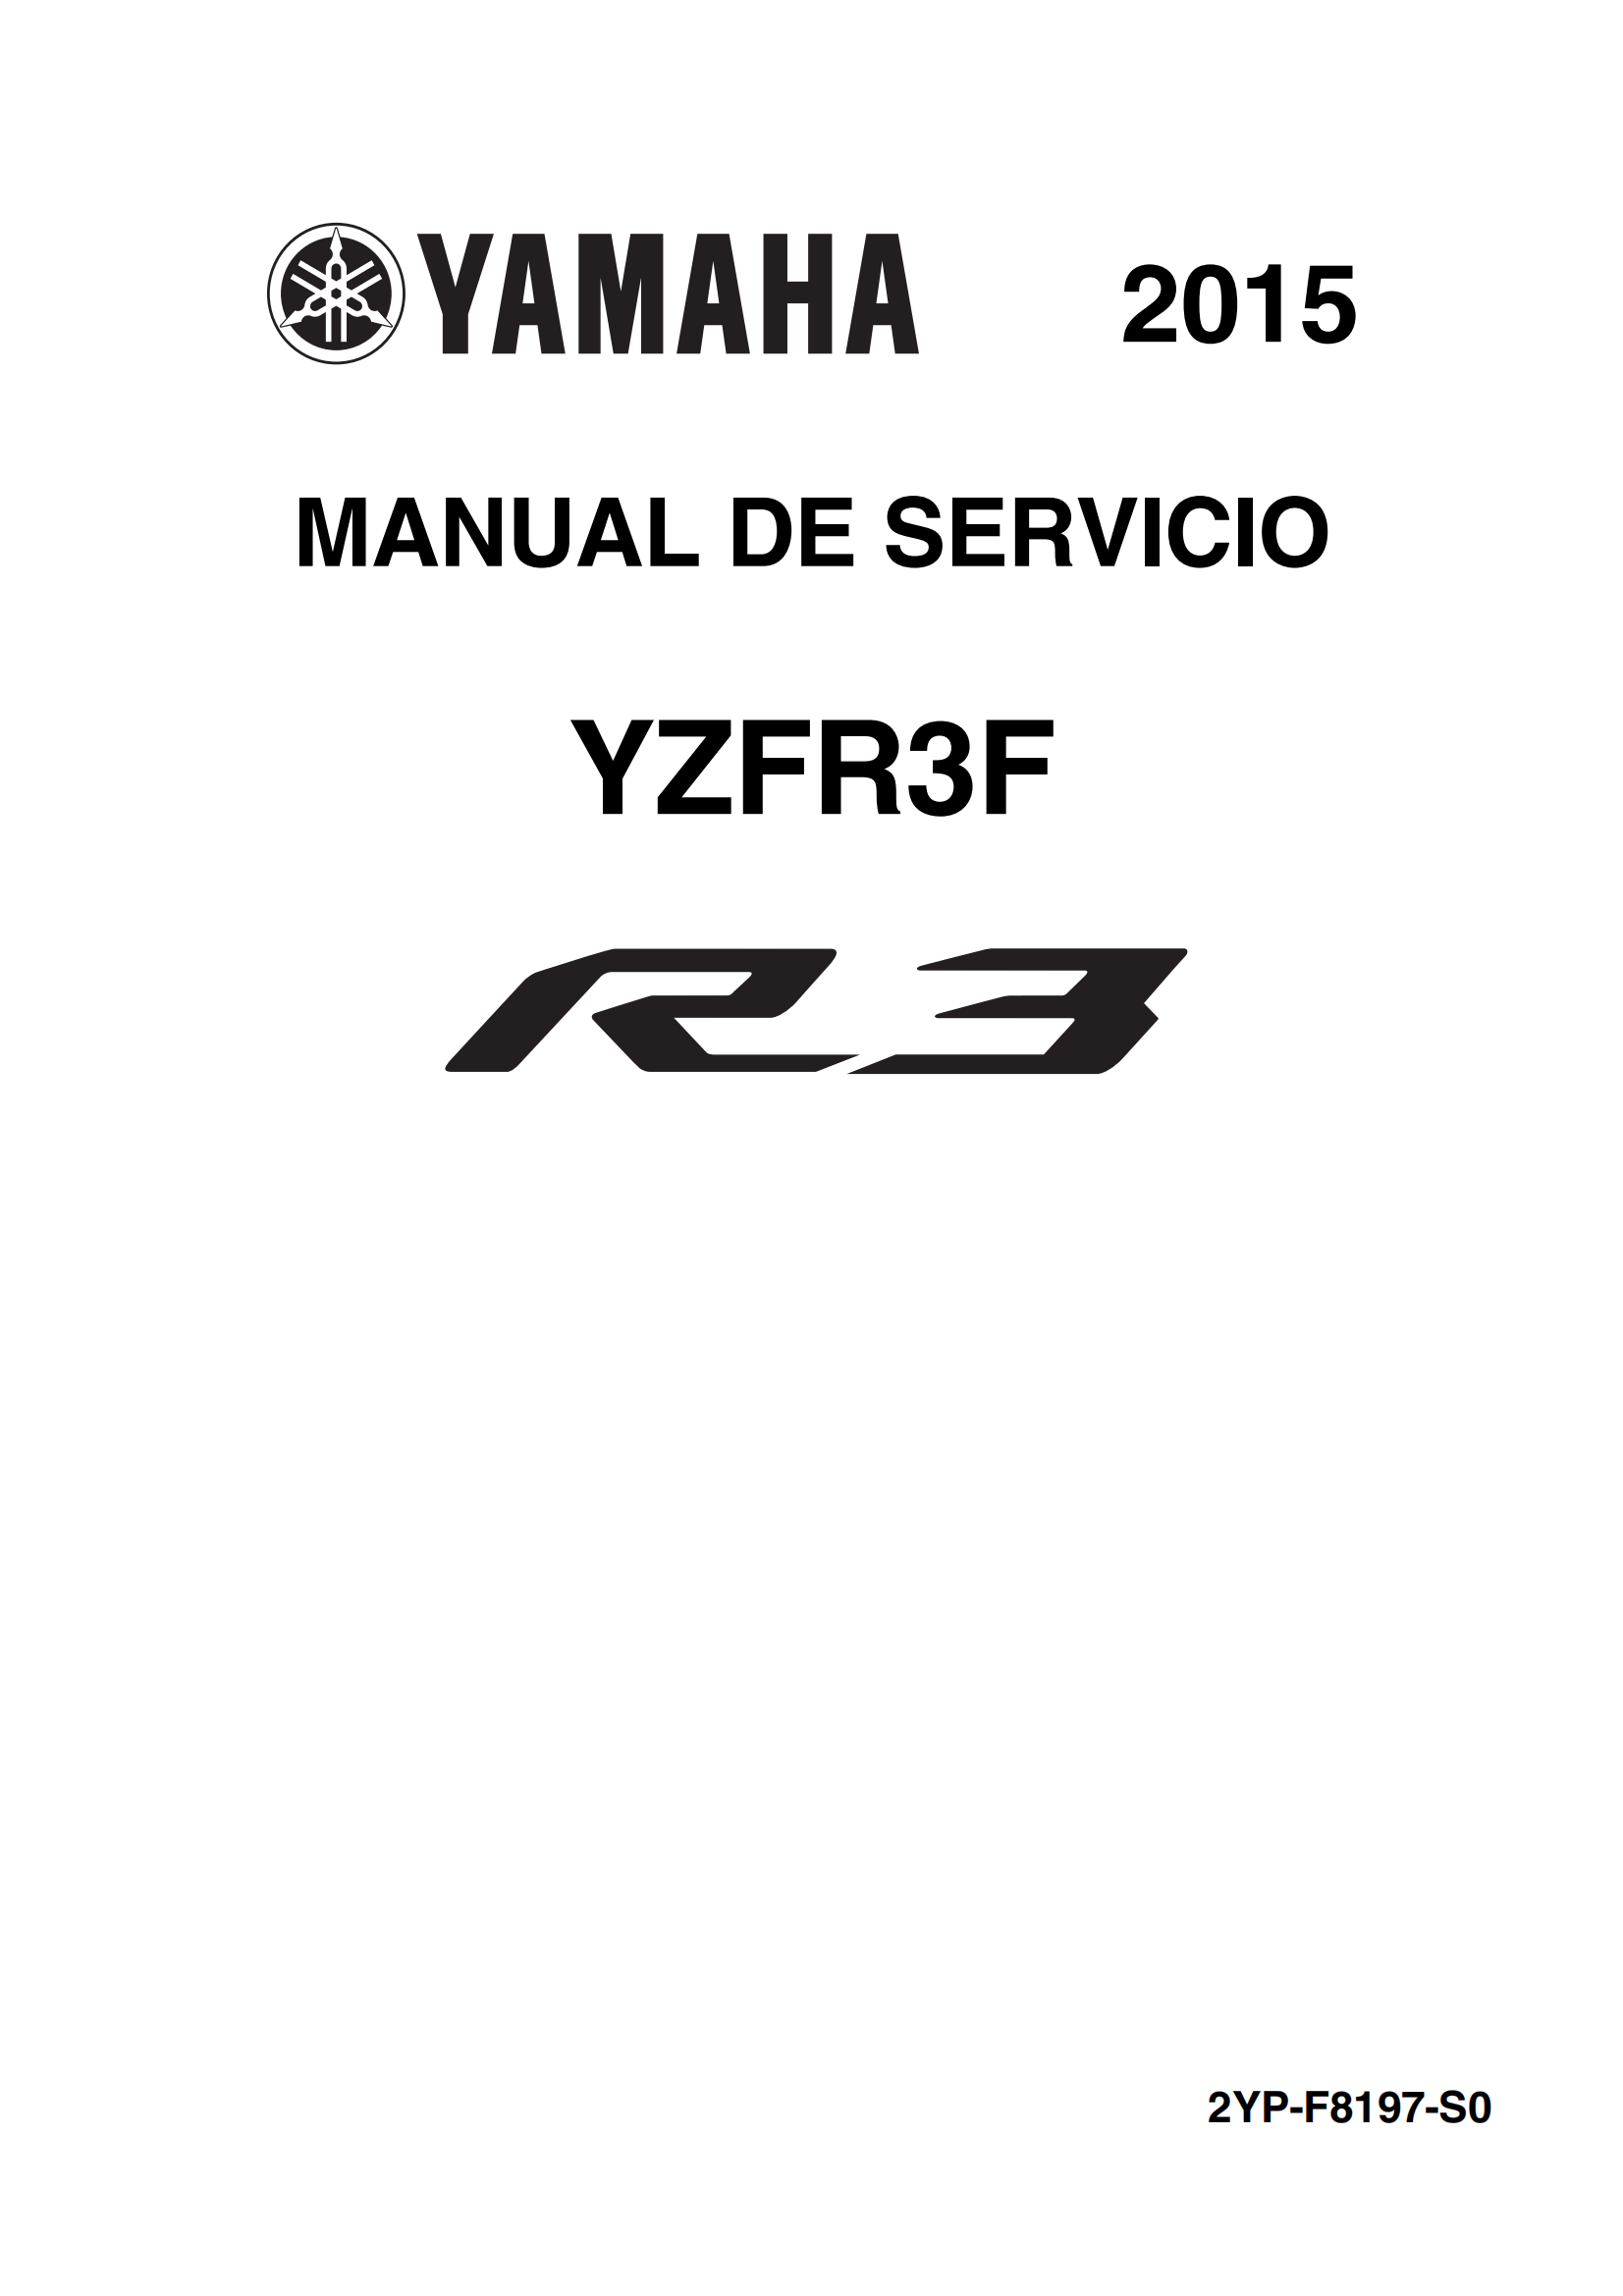 原版西班牙语2015-2018年雅马哈r3维修手册雅马哈yzfr3 yamaha yzf-r3维修手册插图